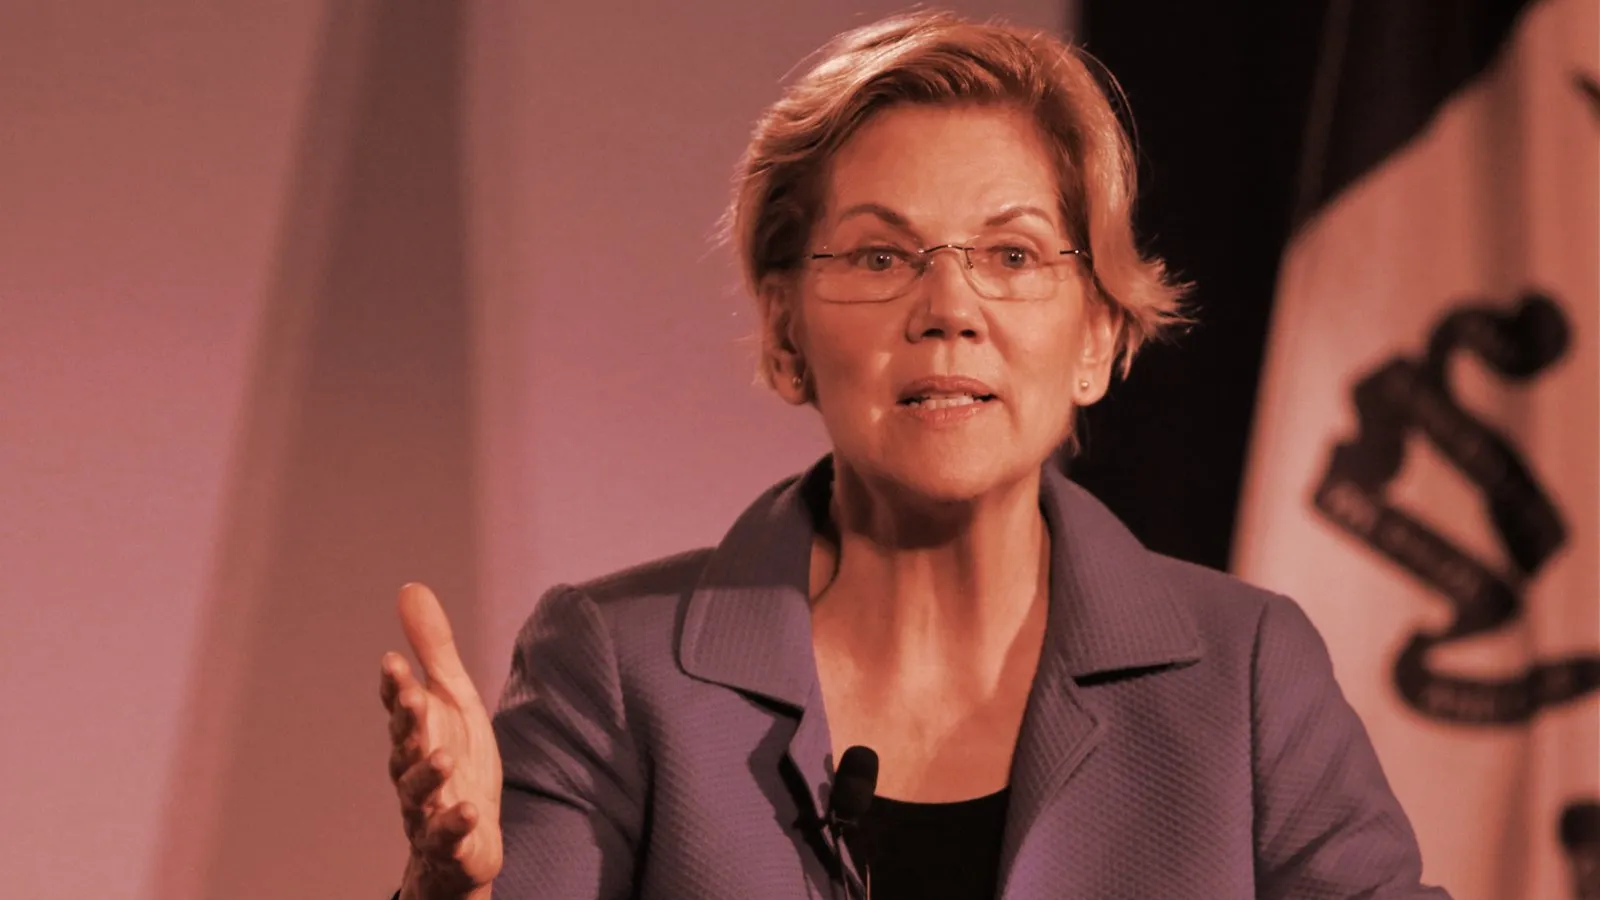 Elizabeth Warren in 2019. Image: Shutterstock